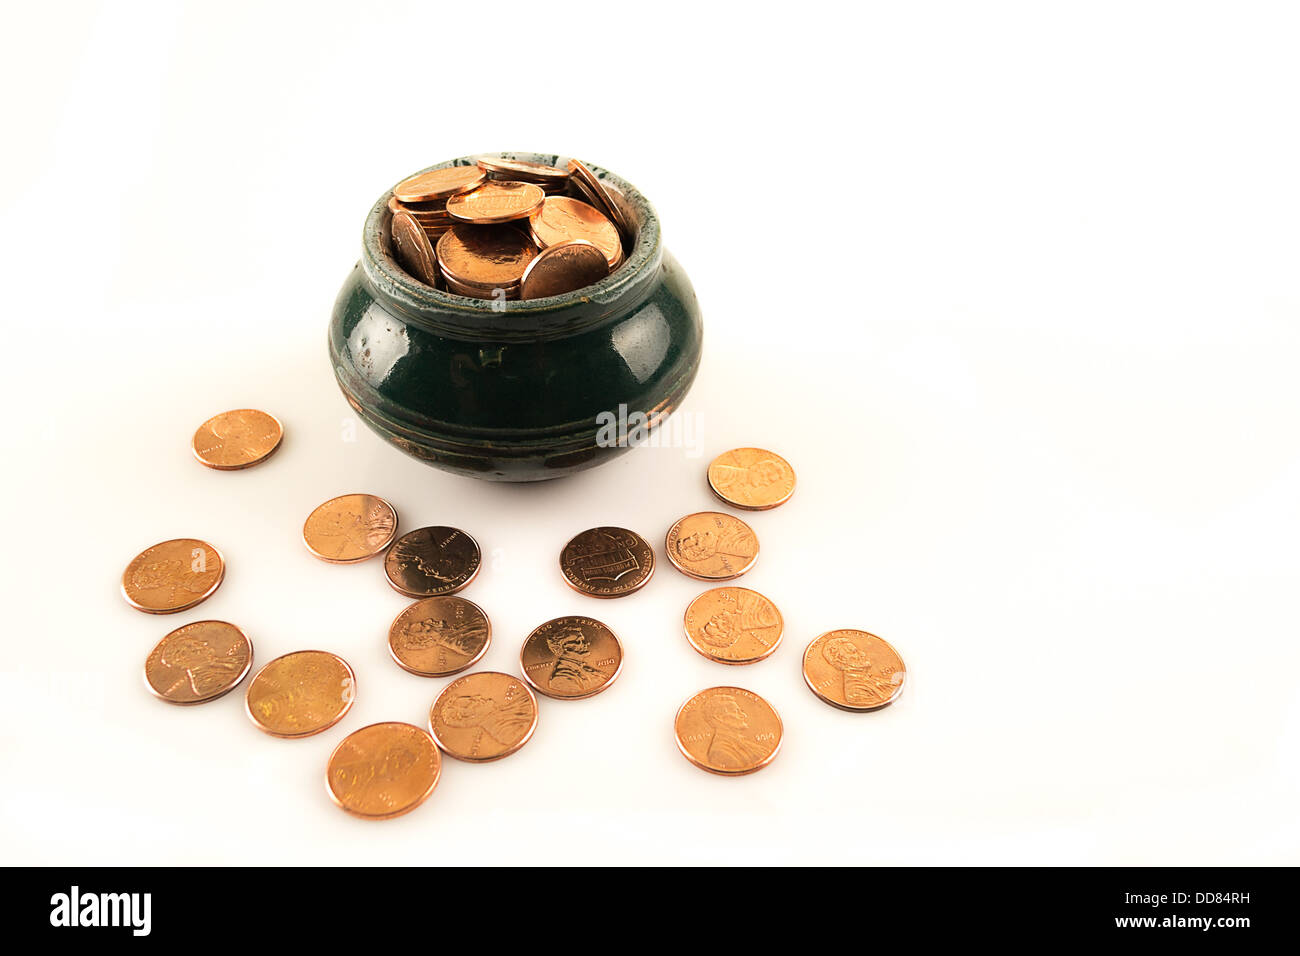 Keramik Topf voller Münzen Stockfoto